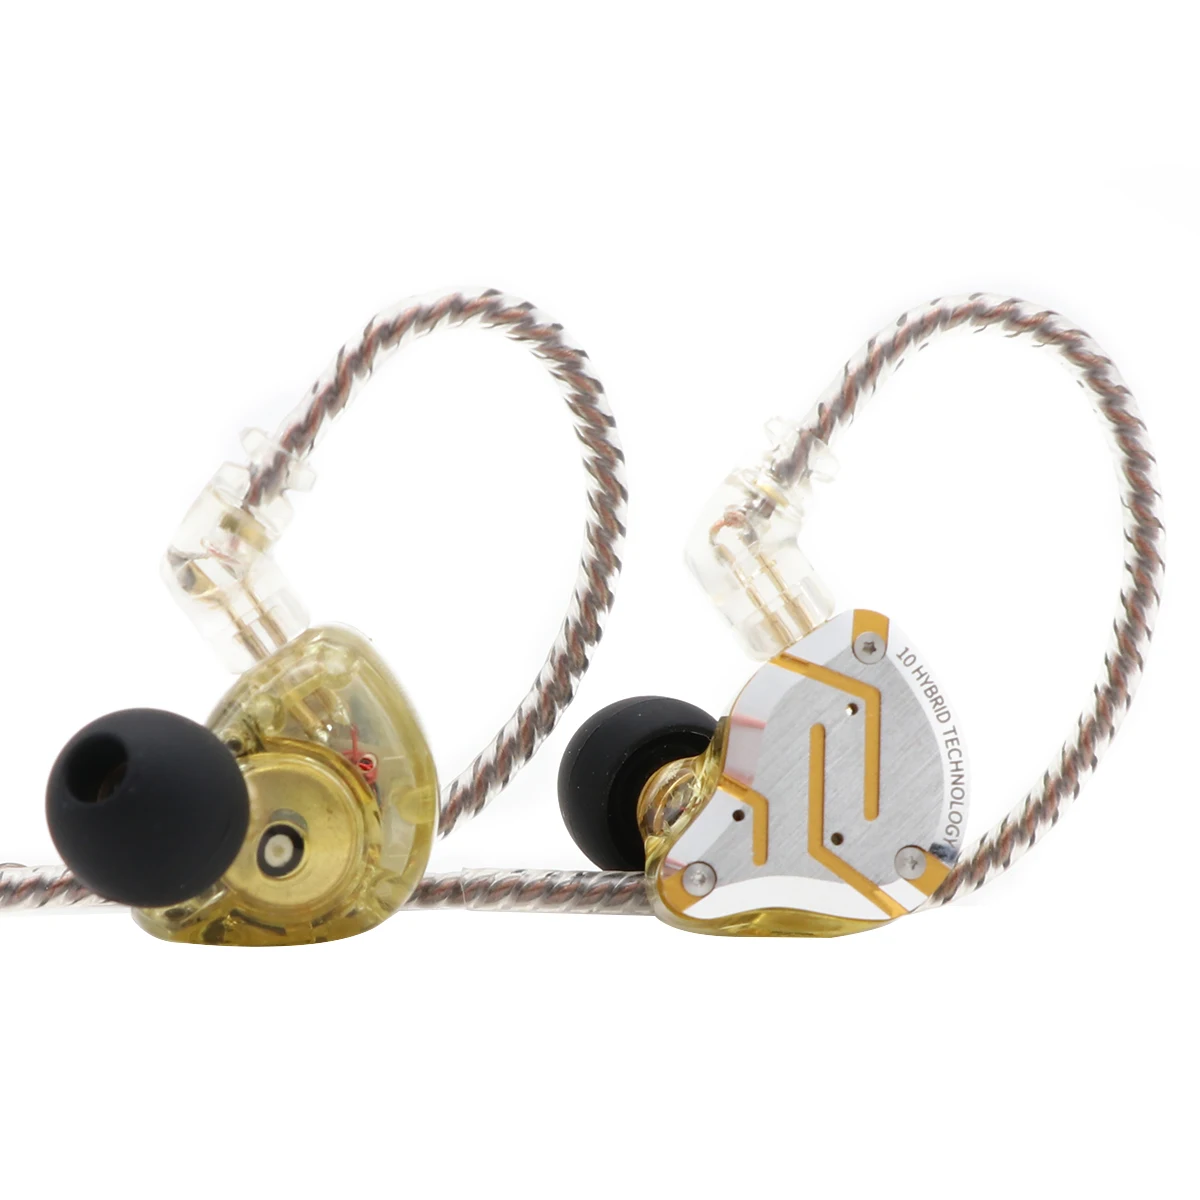 Плотным верхним ворсом KZ ZS10 Pro 4BA+ 1DD 5 в ухо для водителей HiFi наушники из глянцевого металла с Нержавеющая сталь Лицевая панель, 2 контактный съемный кабель - Цвет: Gold with mic